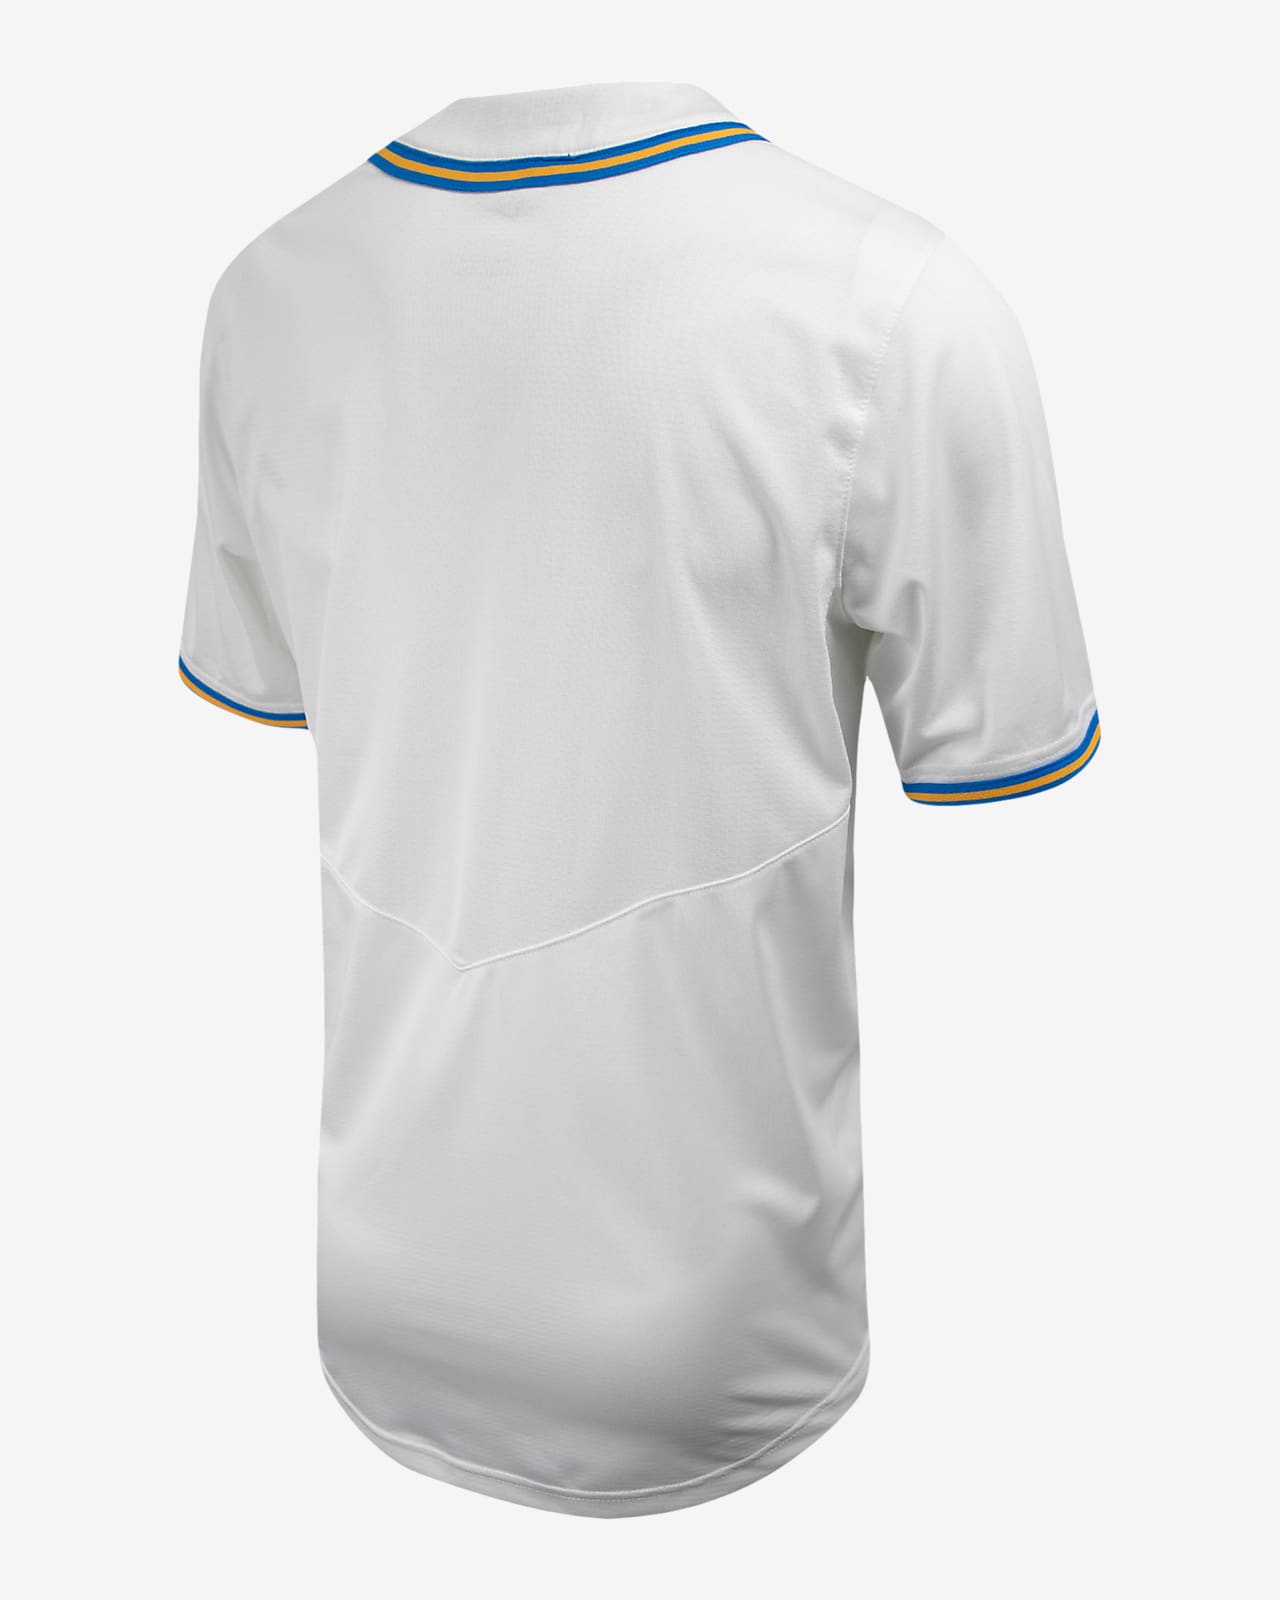 Nike Men's UCLA Bruins White Full Button Replica Baseball Jersey, Medium